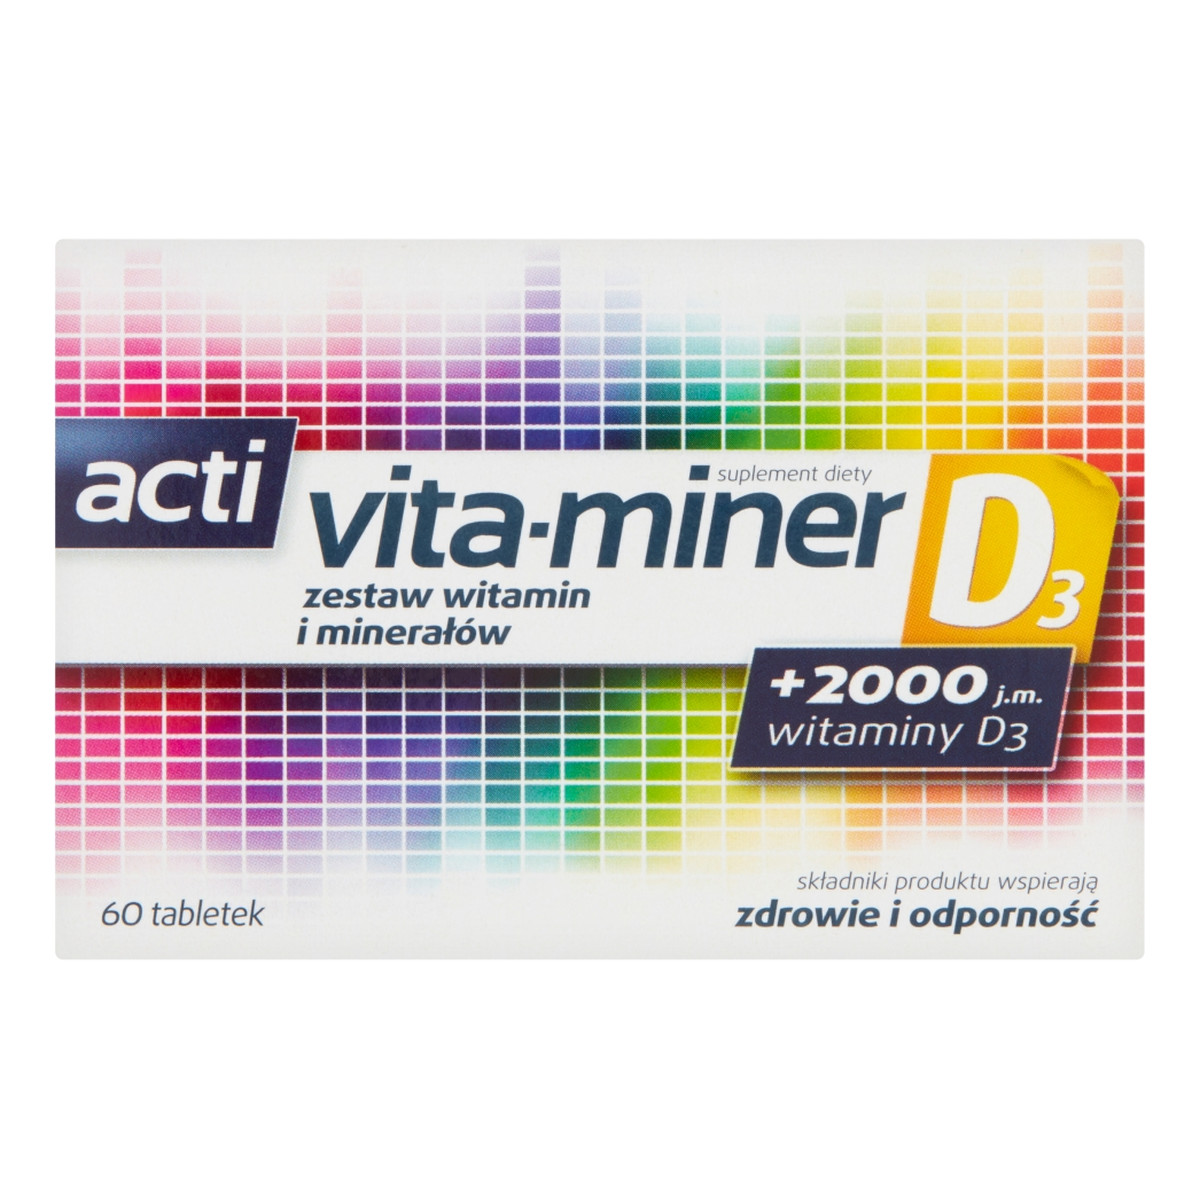 Acti vita-miner D3 Zestaw witamin i minerałów suplement diety 60 tabletek